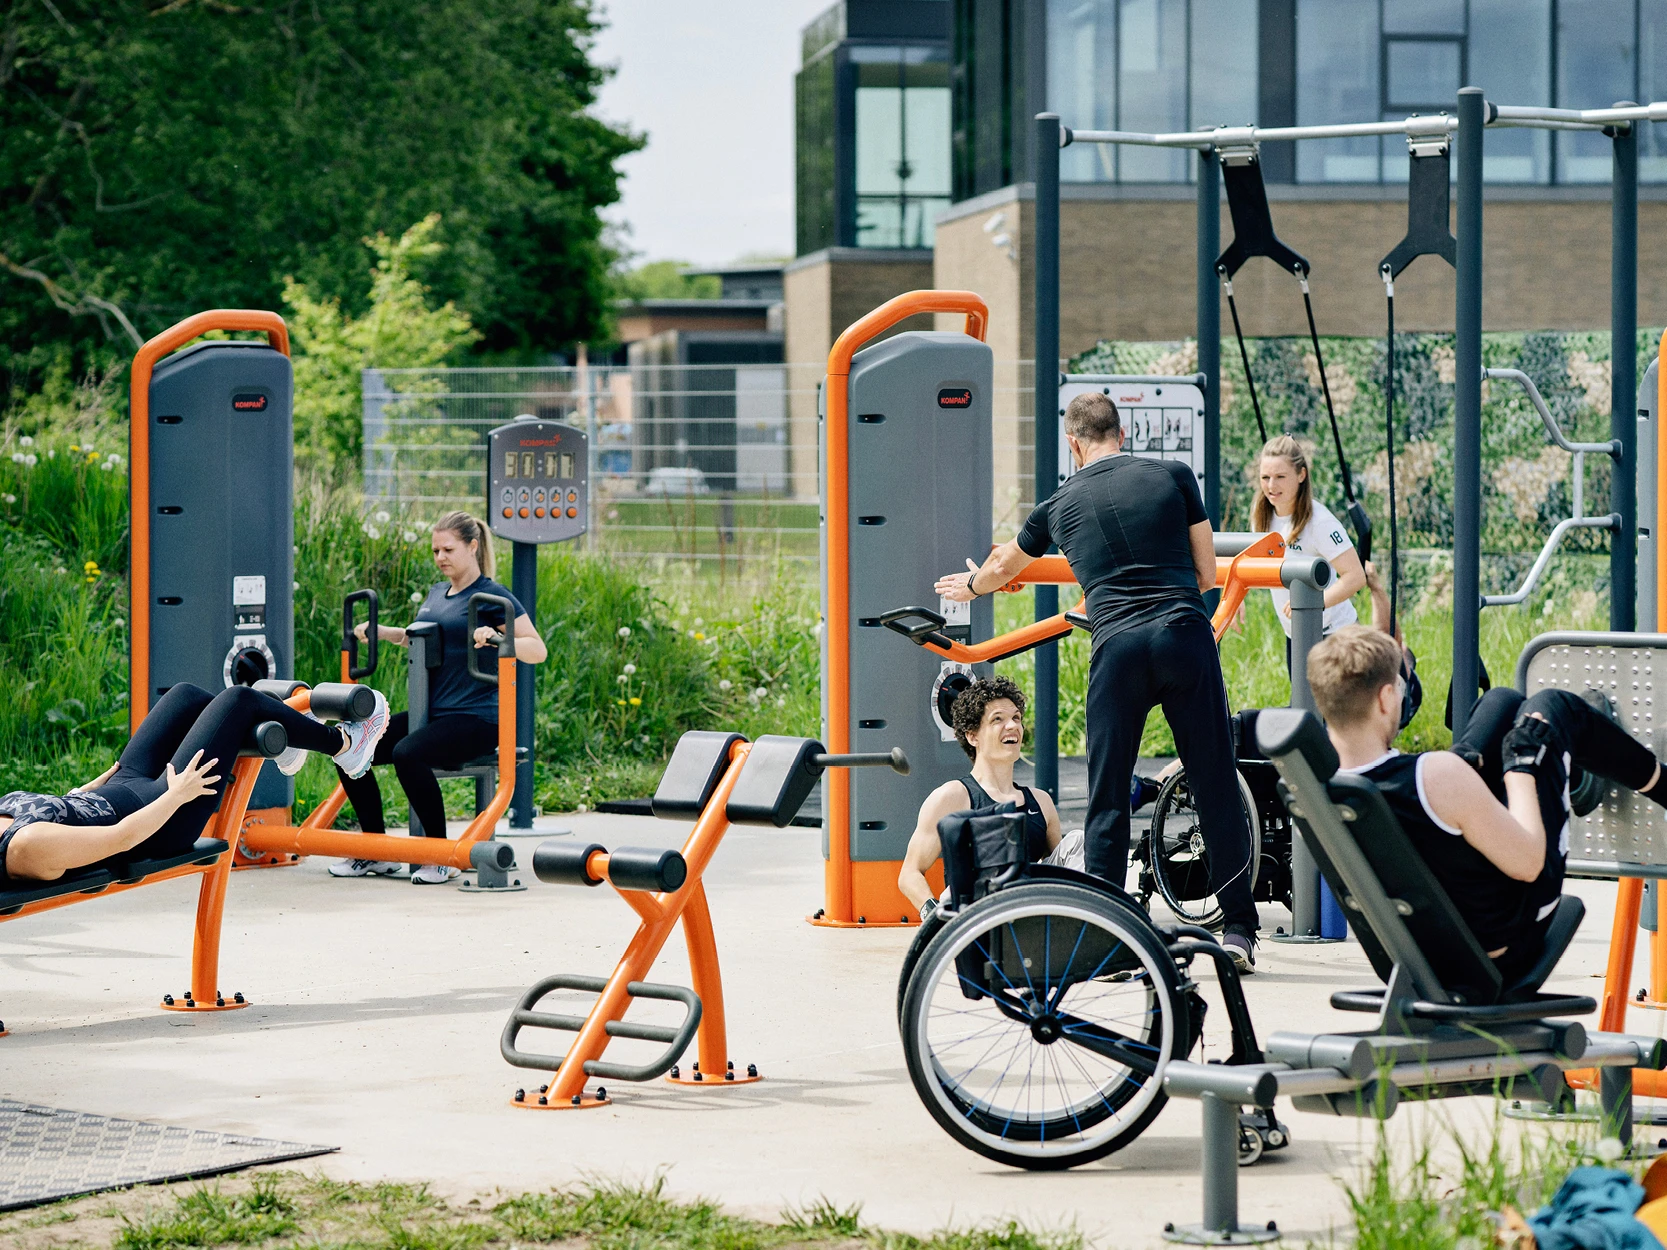 En gruppe mennesker bruger træningsudstyr i en park.